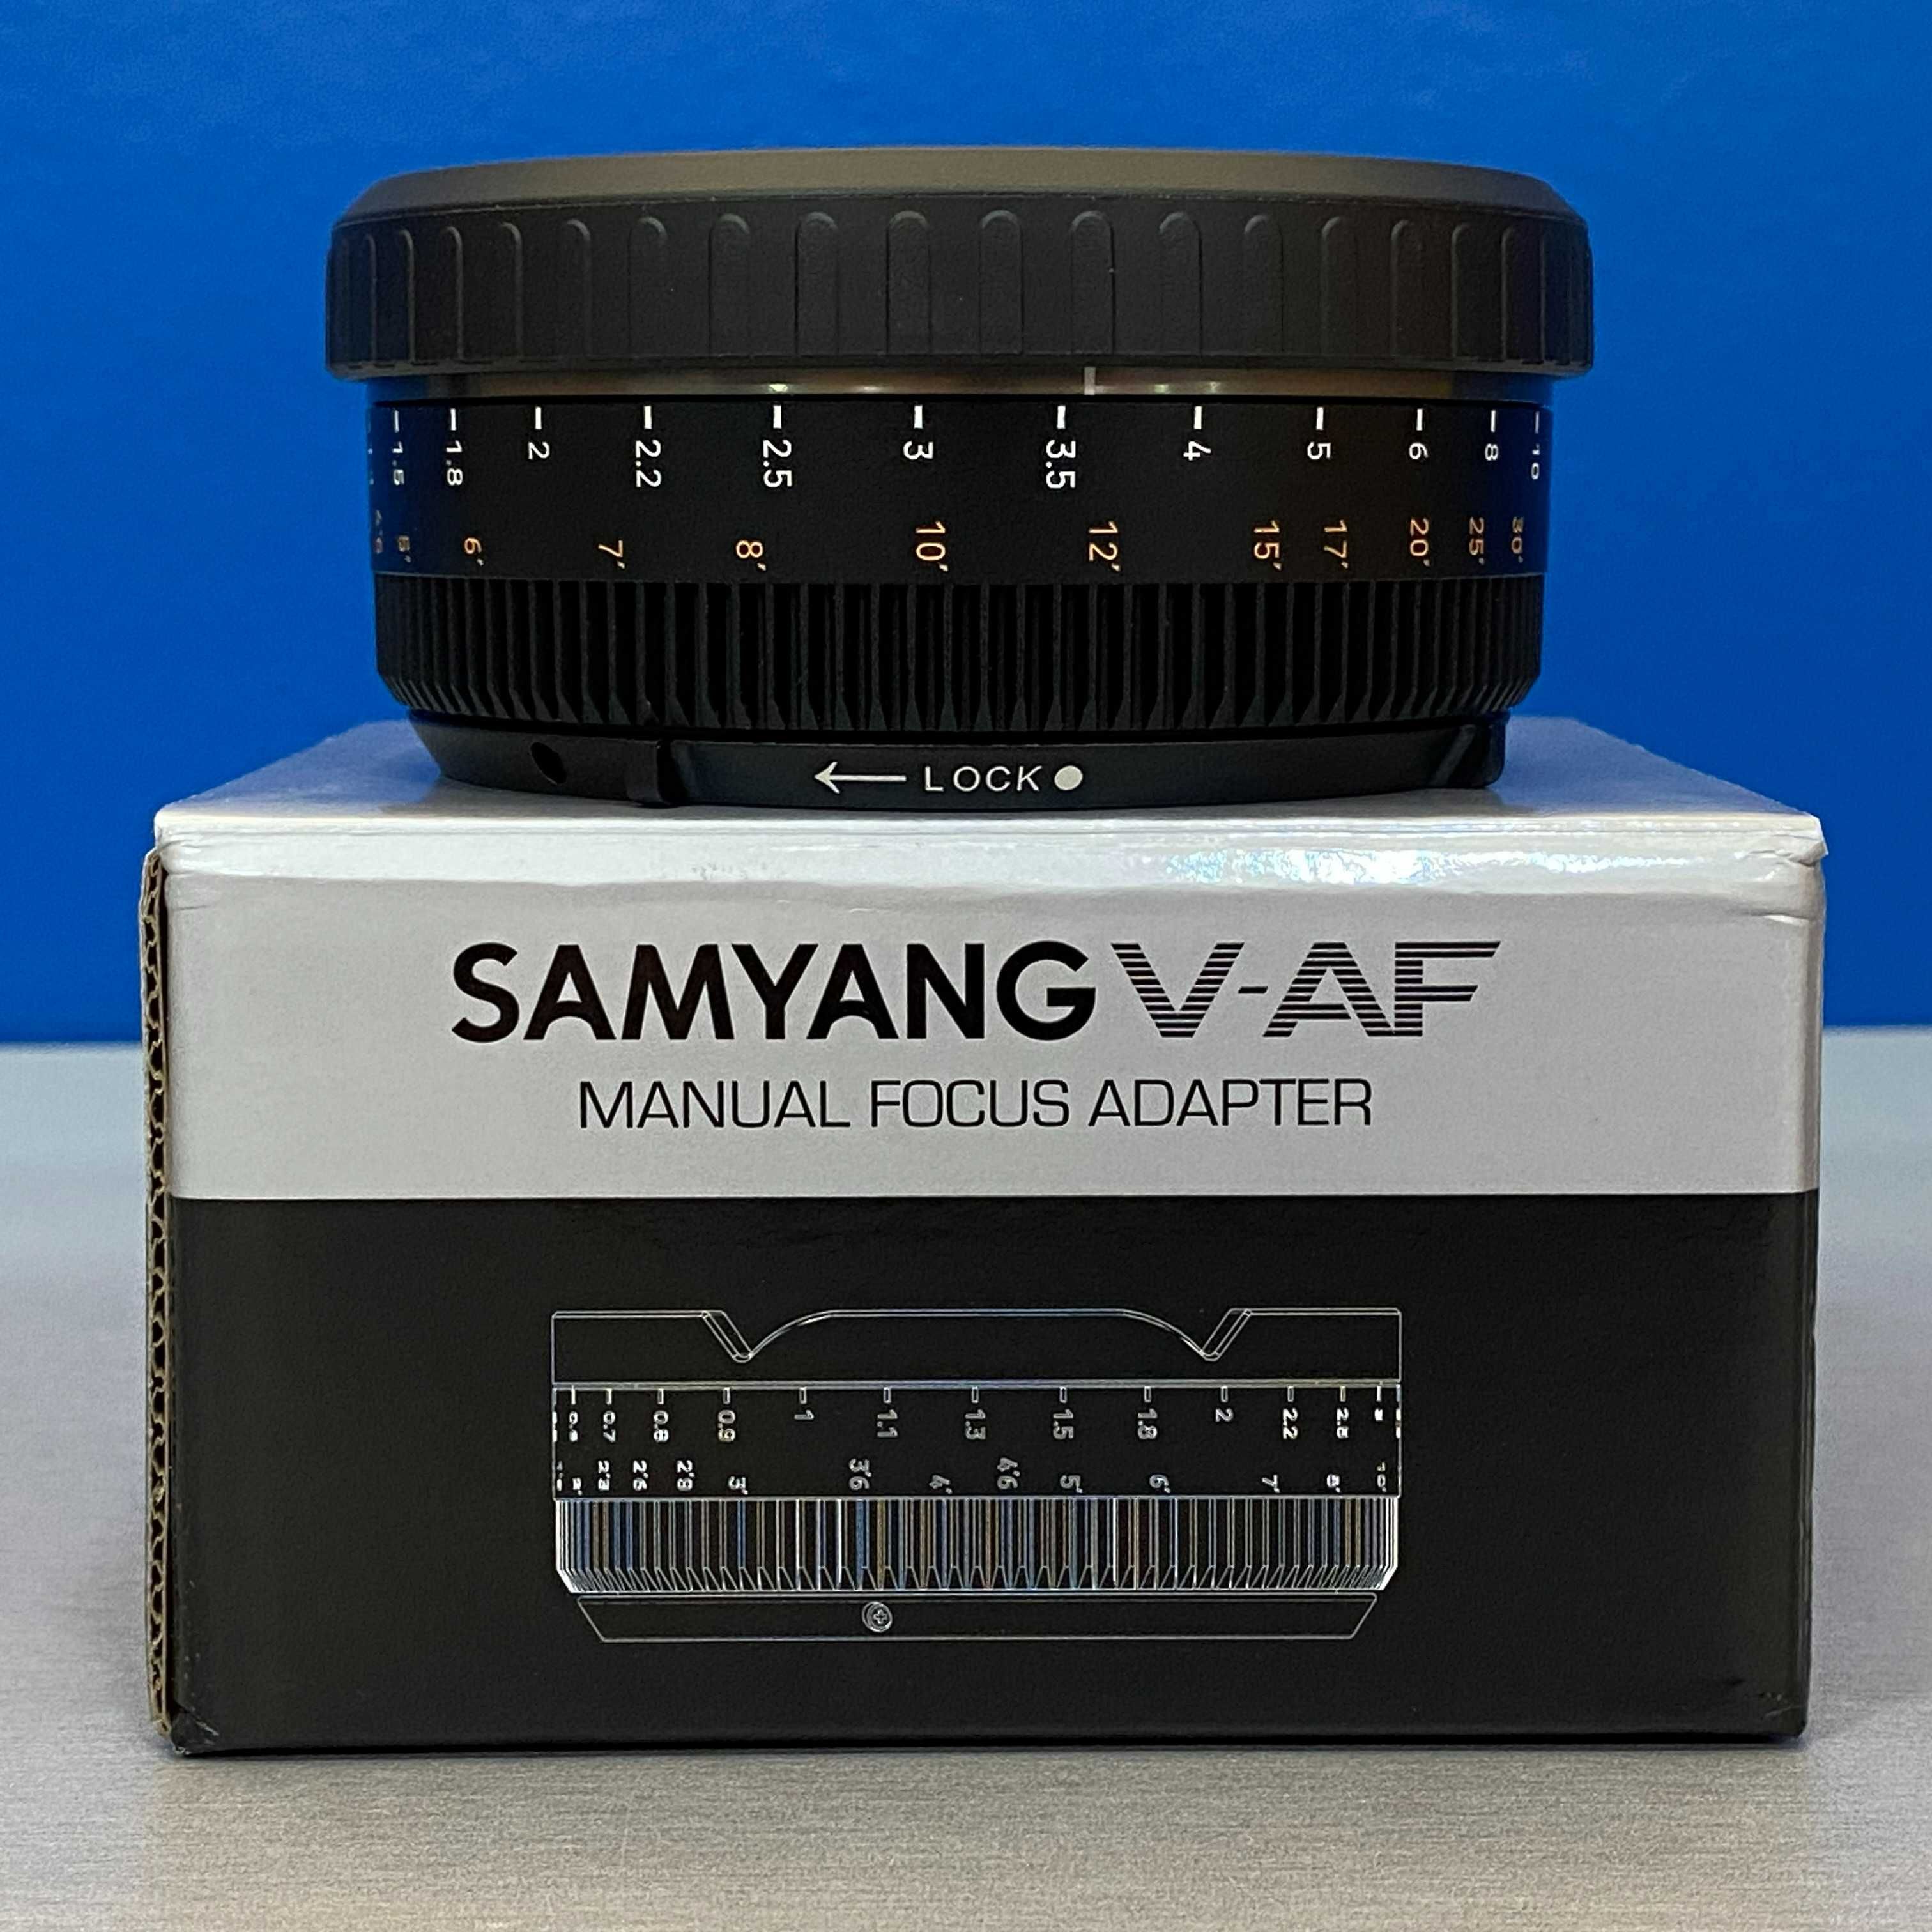 Samyang V-AF Manual Focus Adapter (NOVO)